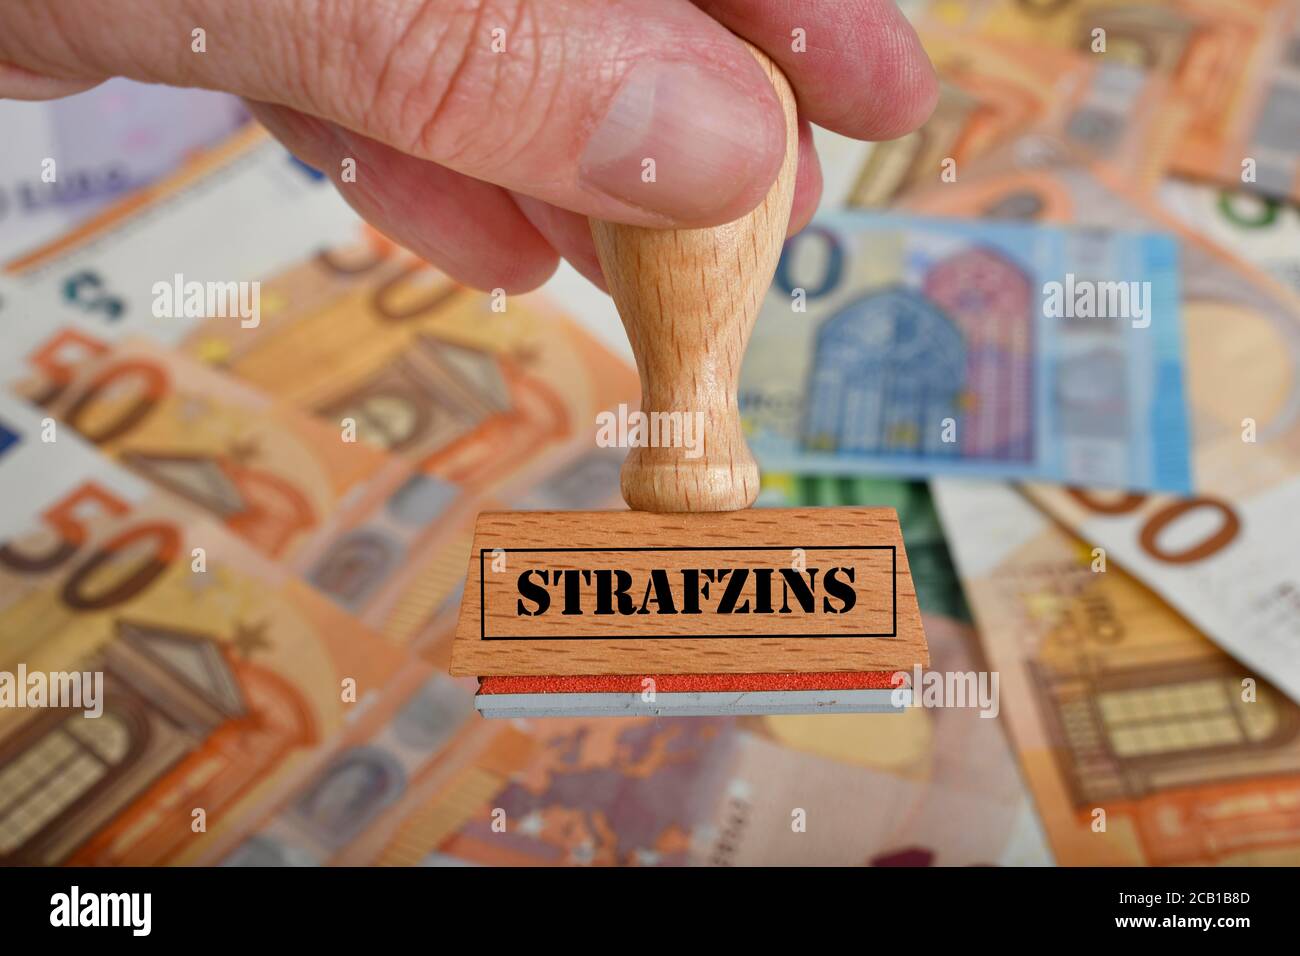 PHOTOMONTAGE, image symbole intérêt négatif, timbre avec inscription STRAFZINS, sur les billets EN EUROS, Allemagne Banque D'Images